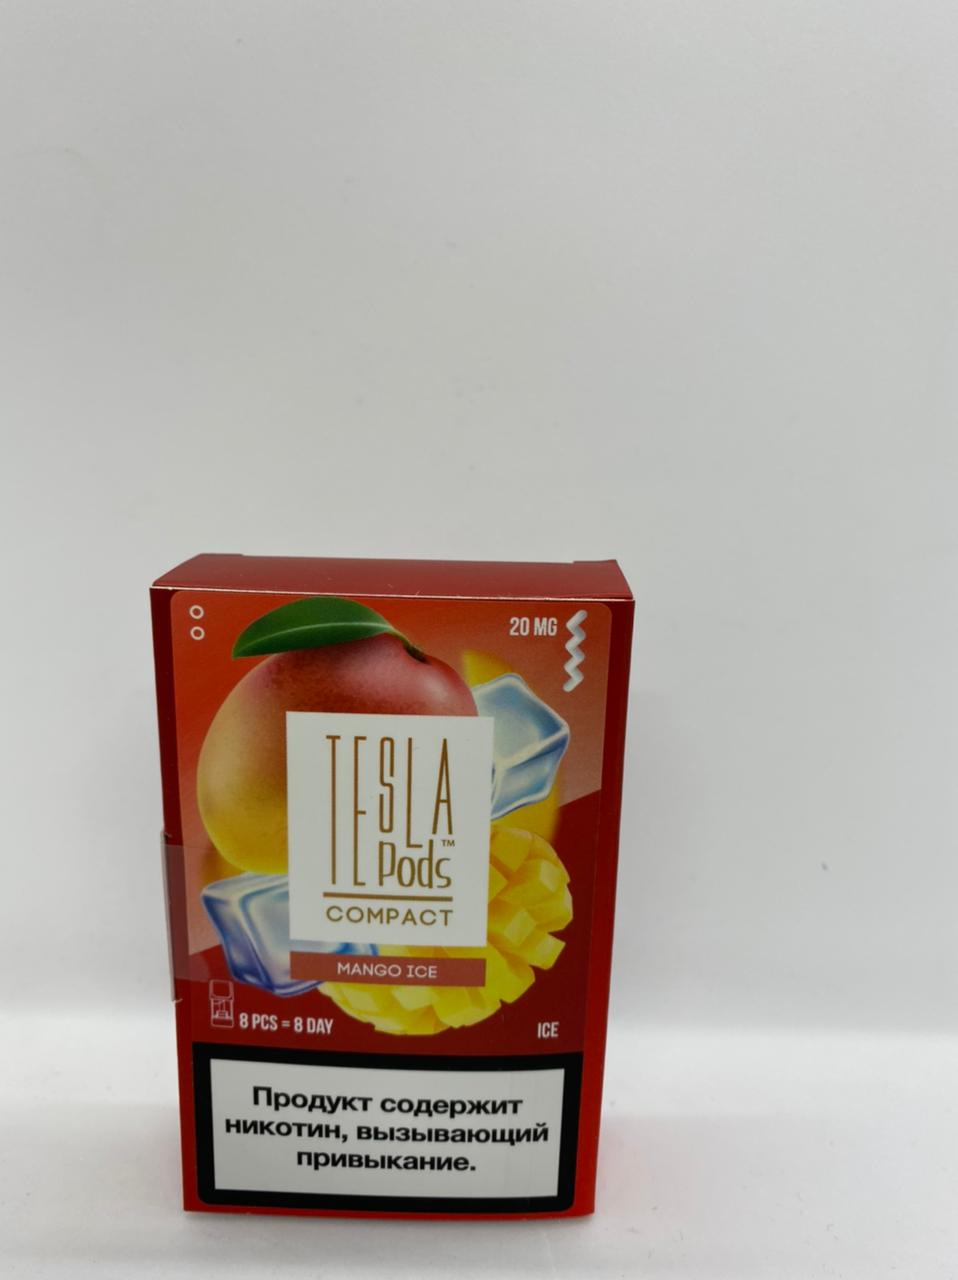 Набор TESLA pods Картридж Mango ice 2% (8 картриджей) compact для Logic с доставкой по Москве и России